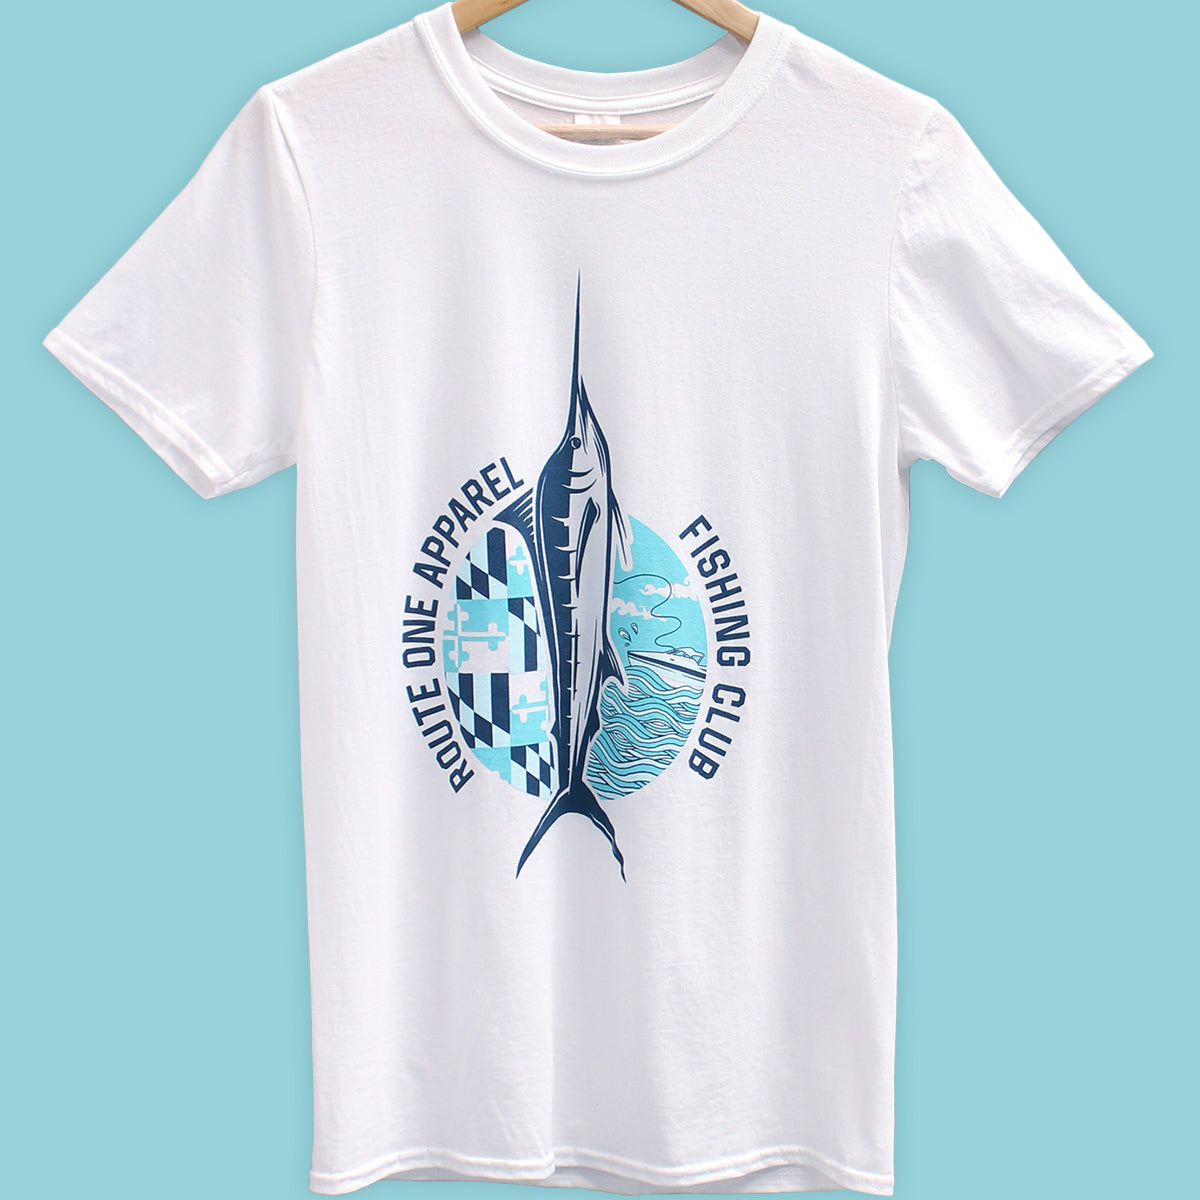 Fishing Club (White) / Shirt - Route One Apparel